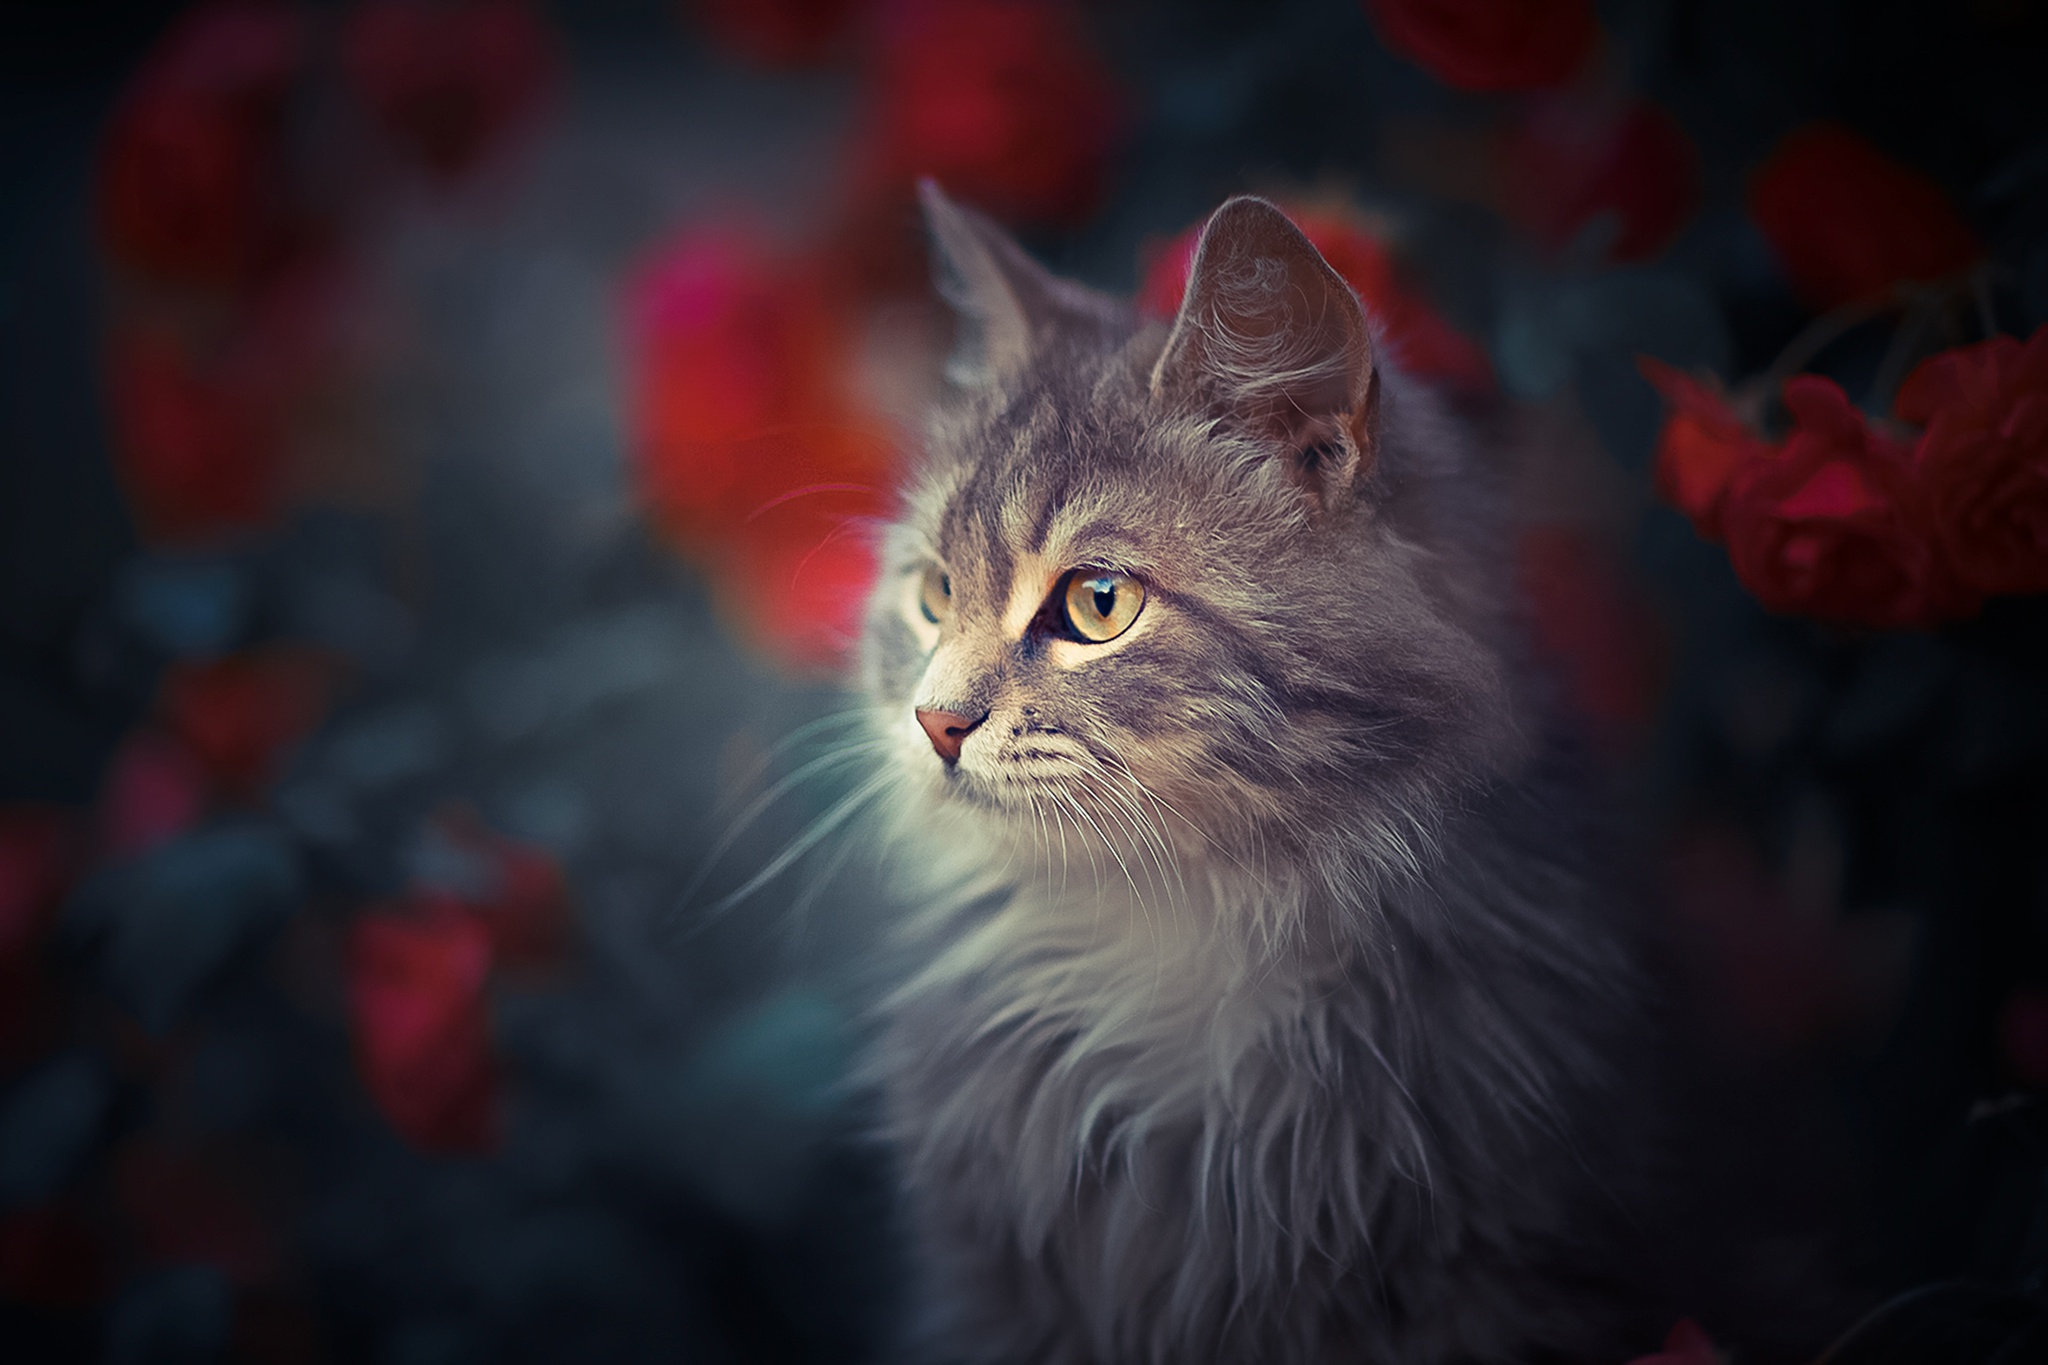 caturday pic of a cat in a rose bush